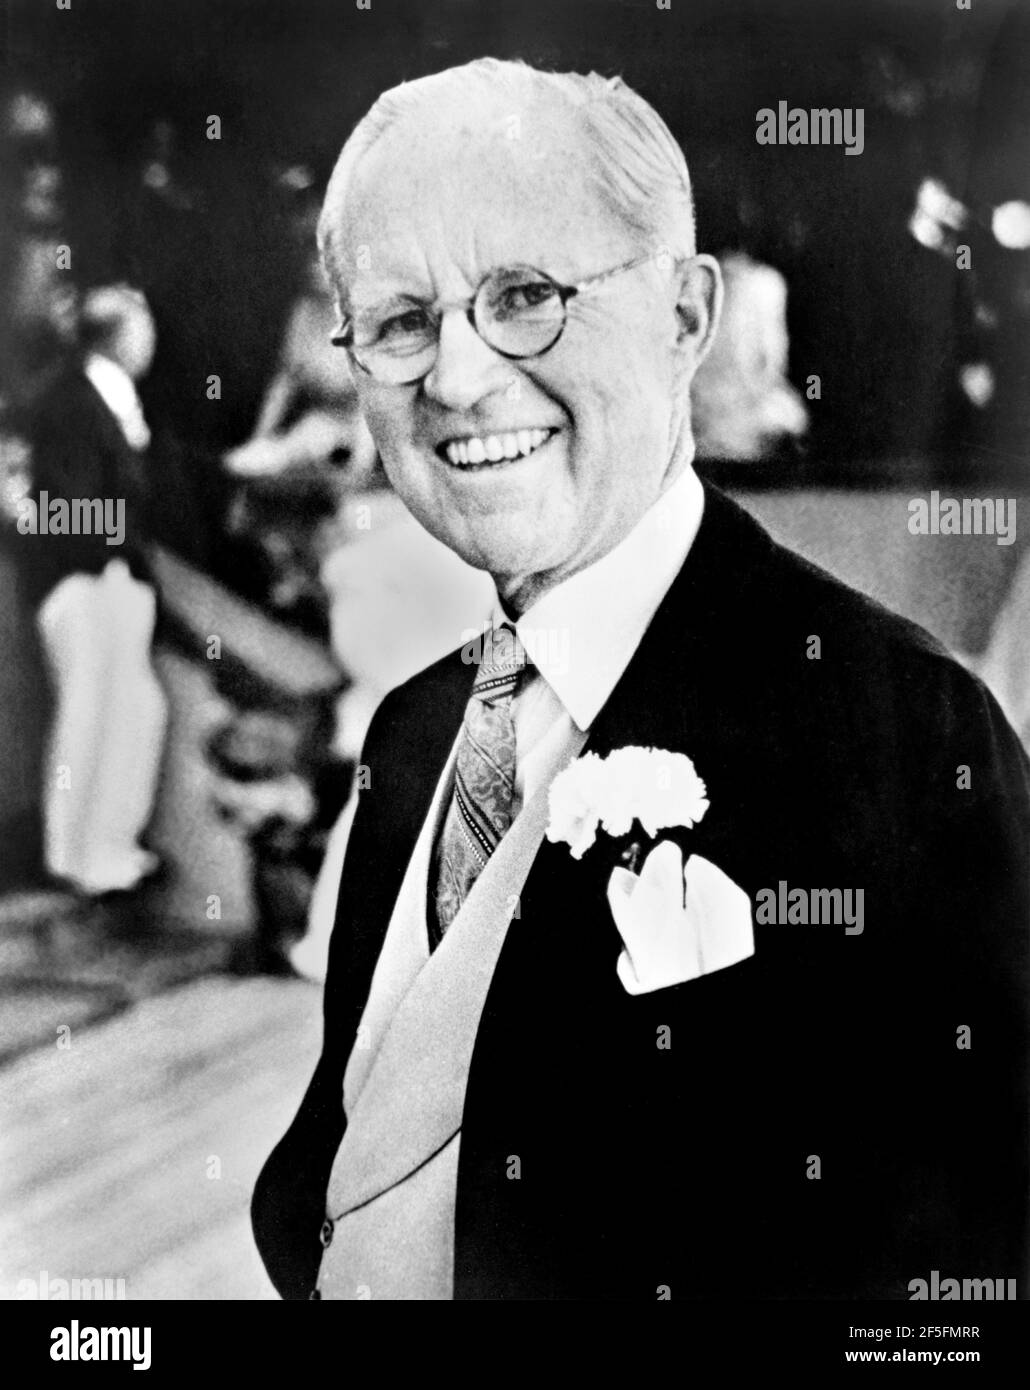 Joseph Kennedy. Ritratto dell'uomo d'affari e politico americano, Joseph Kennedy Sr. (1888-1969) di toni Frissell, 1953 Foto Stock